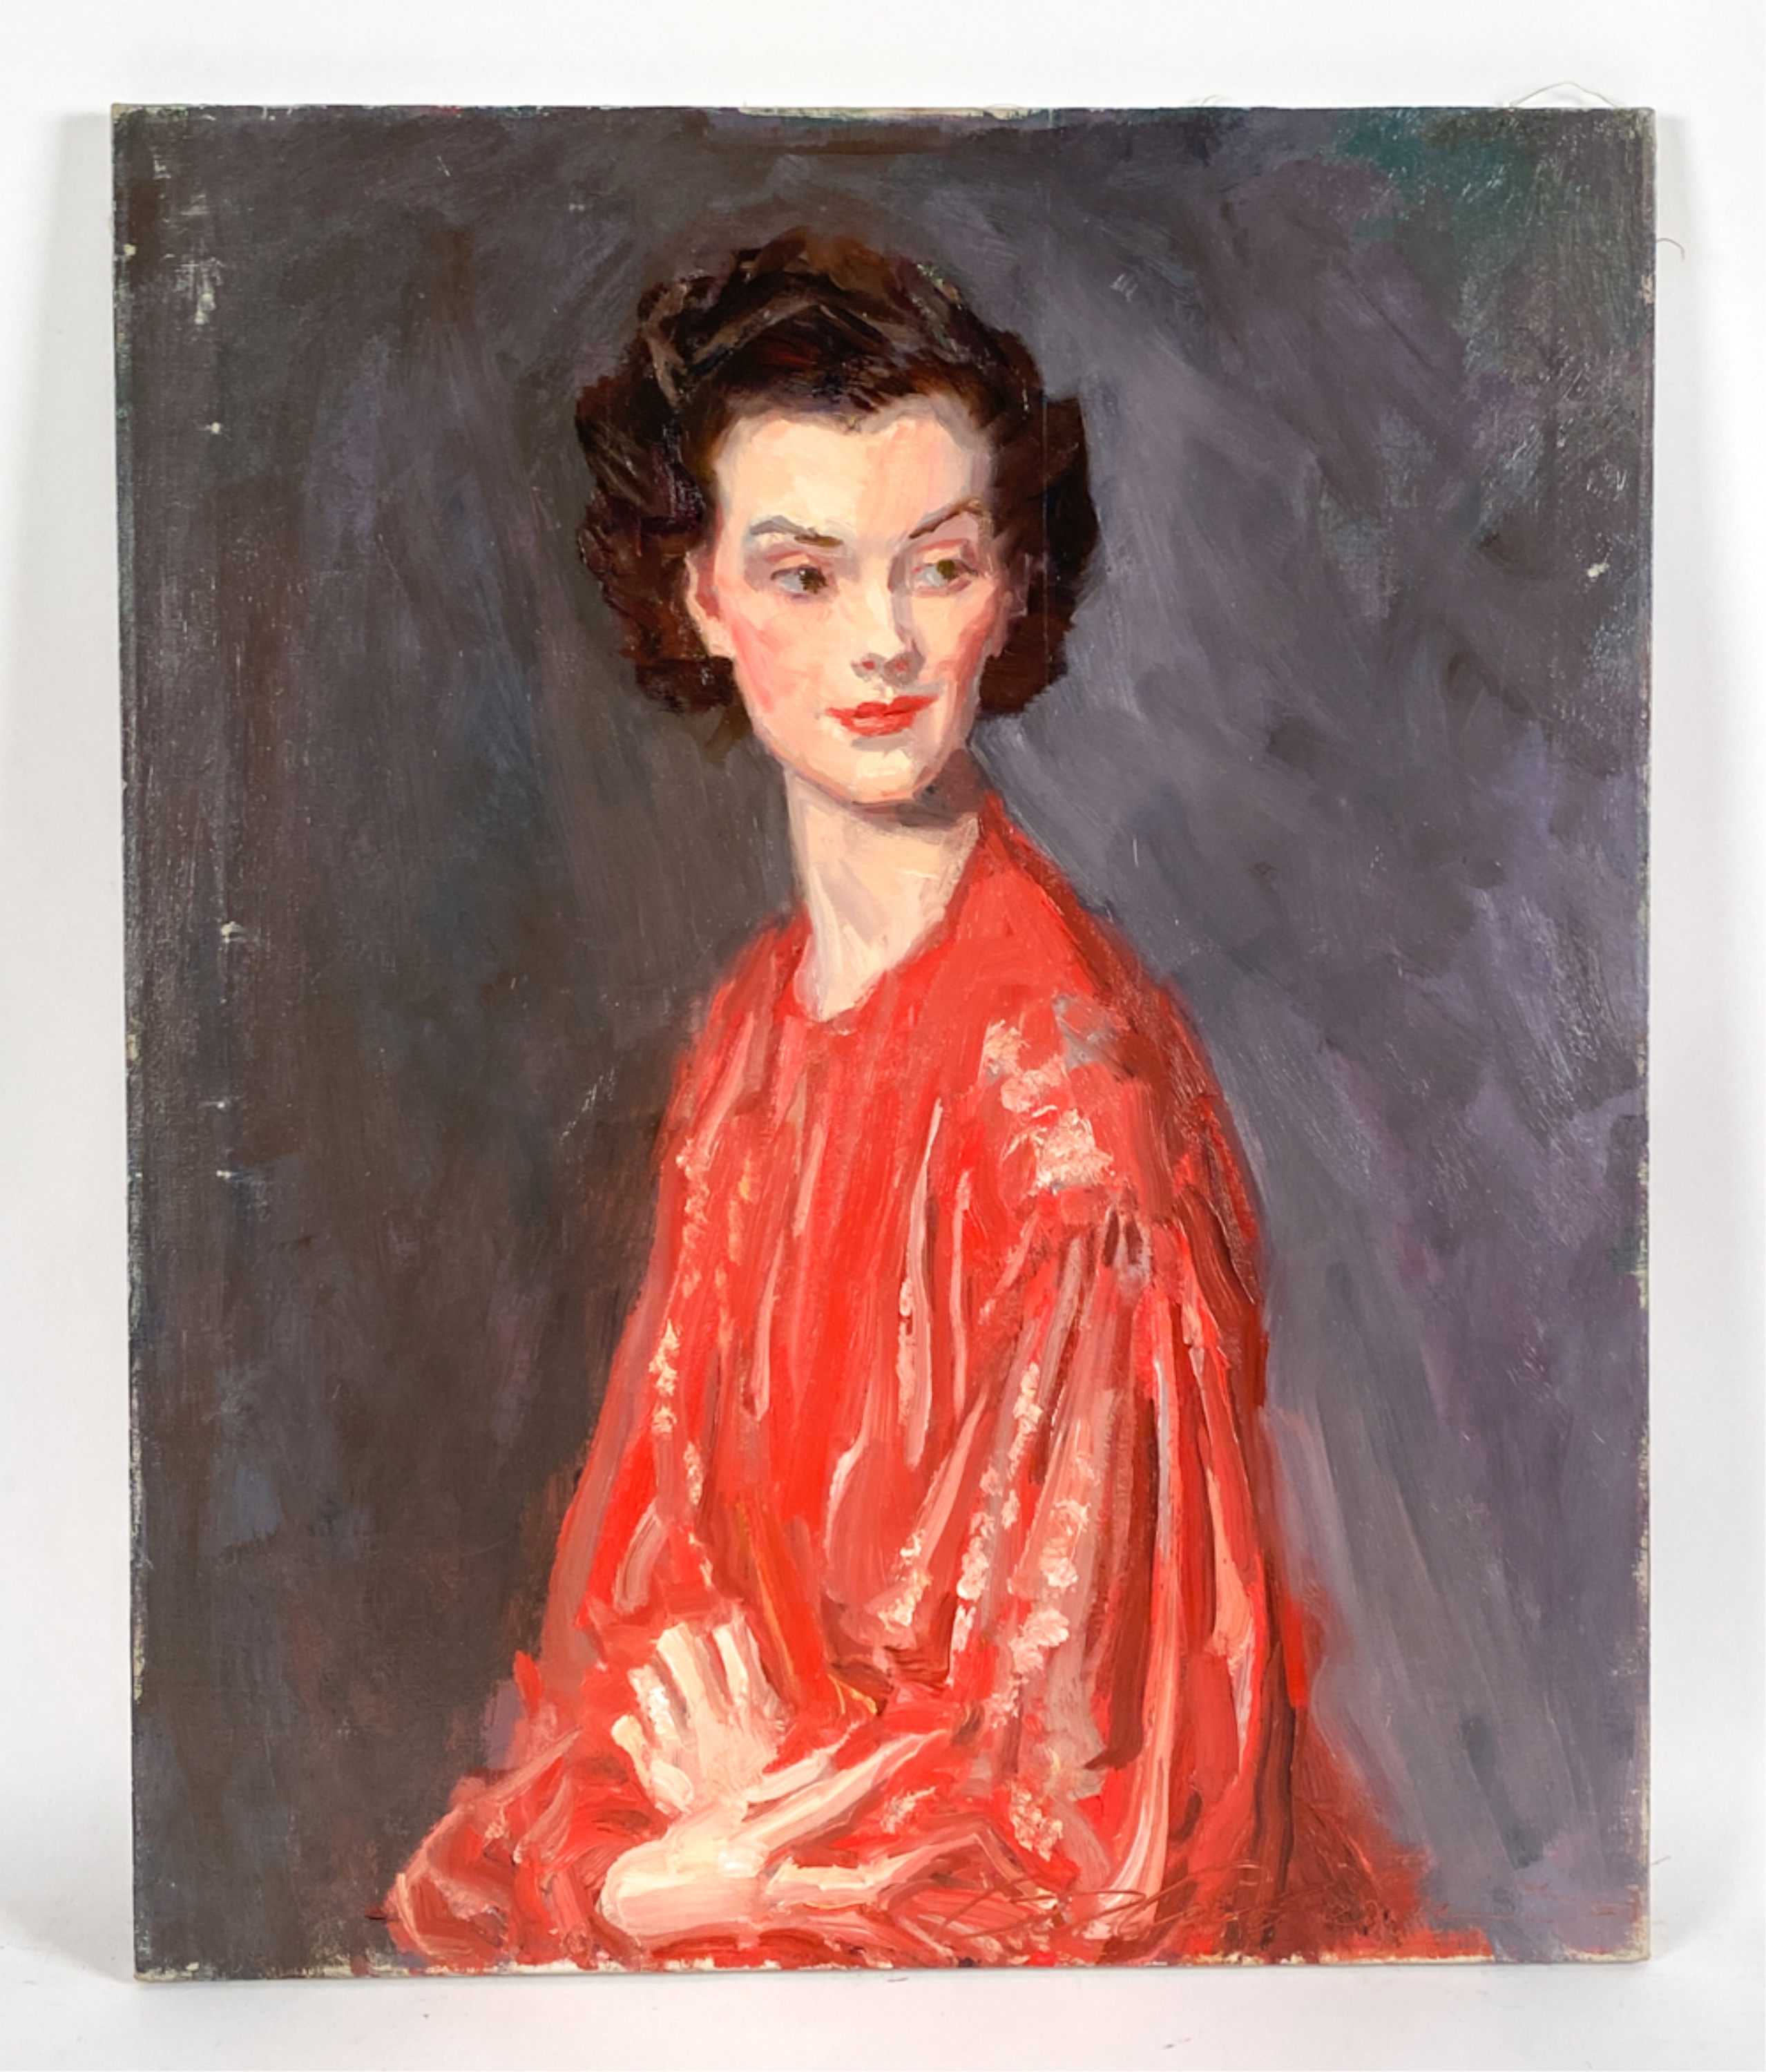 1940s woman portrait